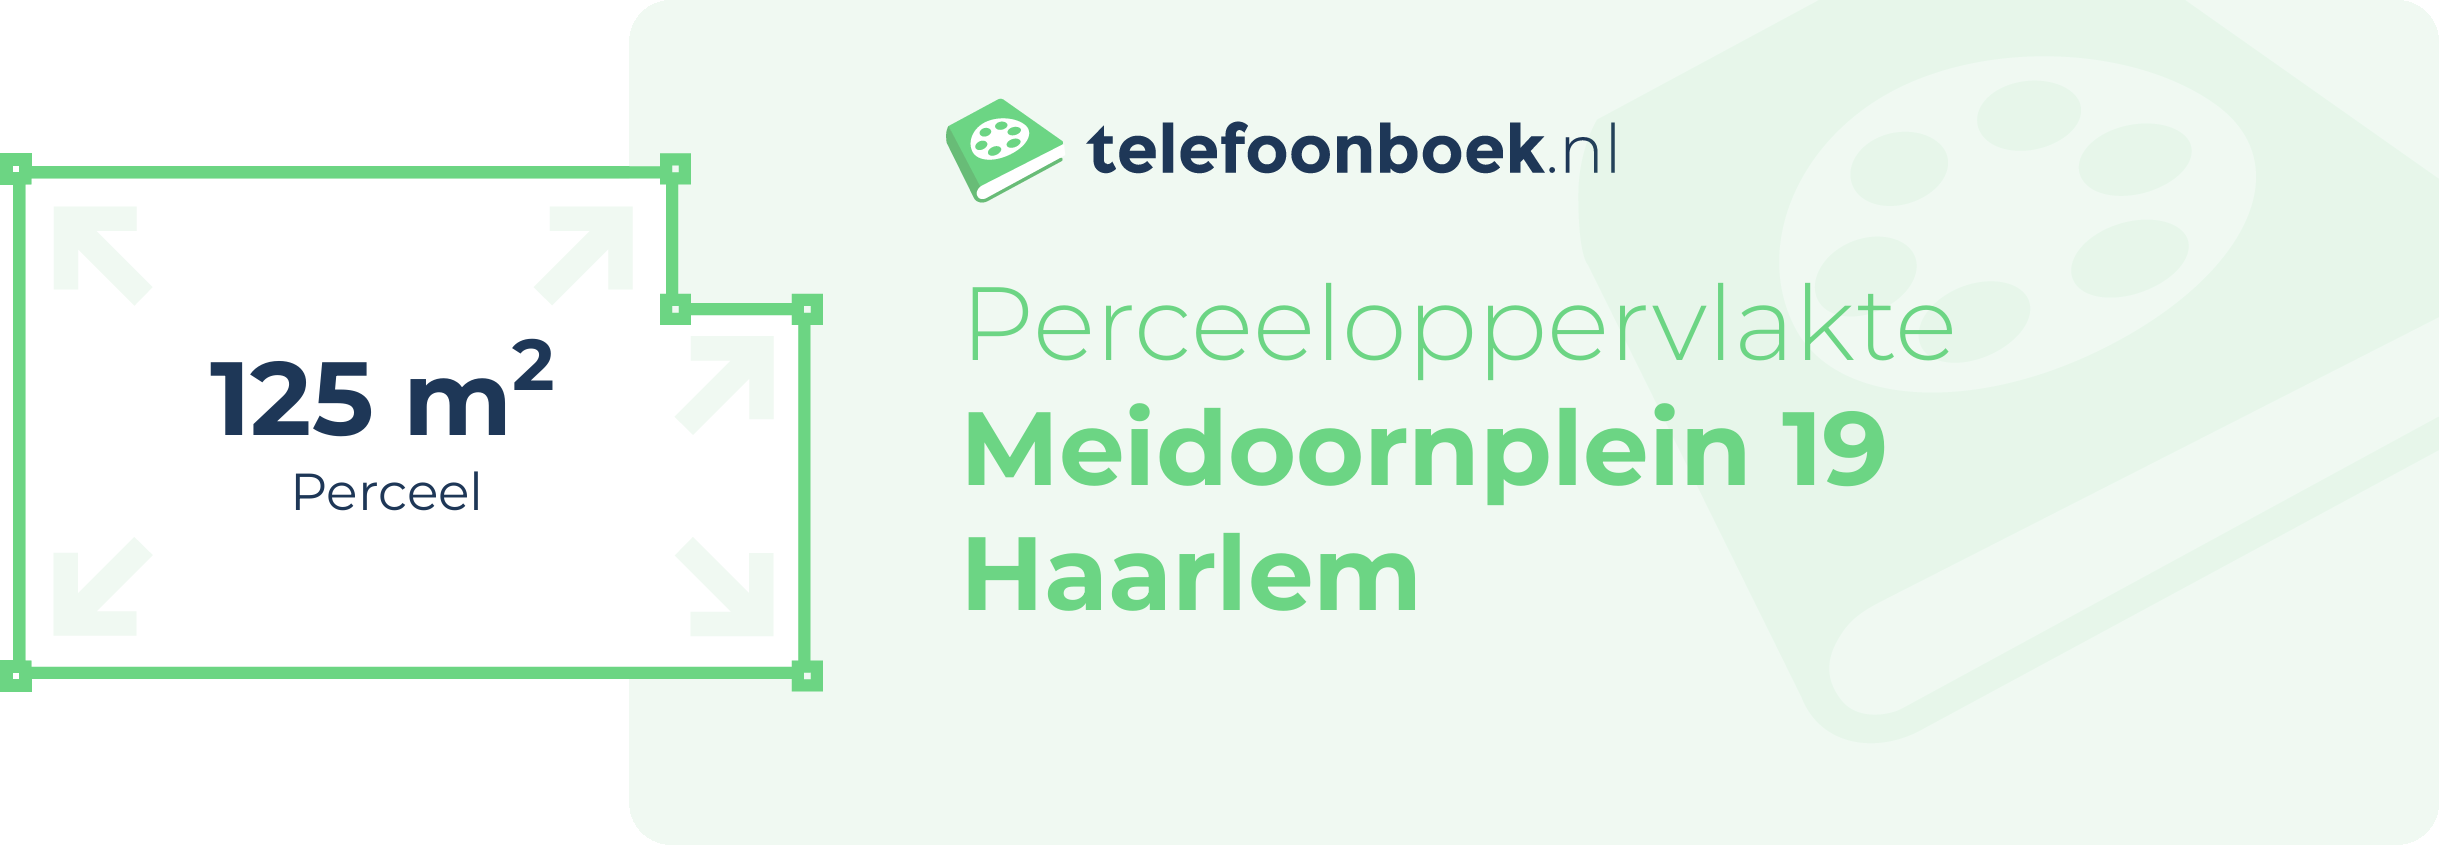 Perceeloppervlakte Meidoornplein 19 Haarlem